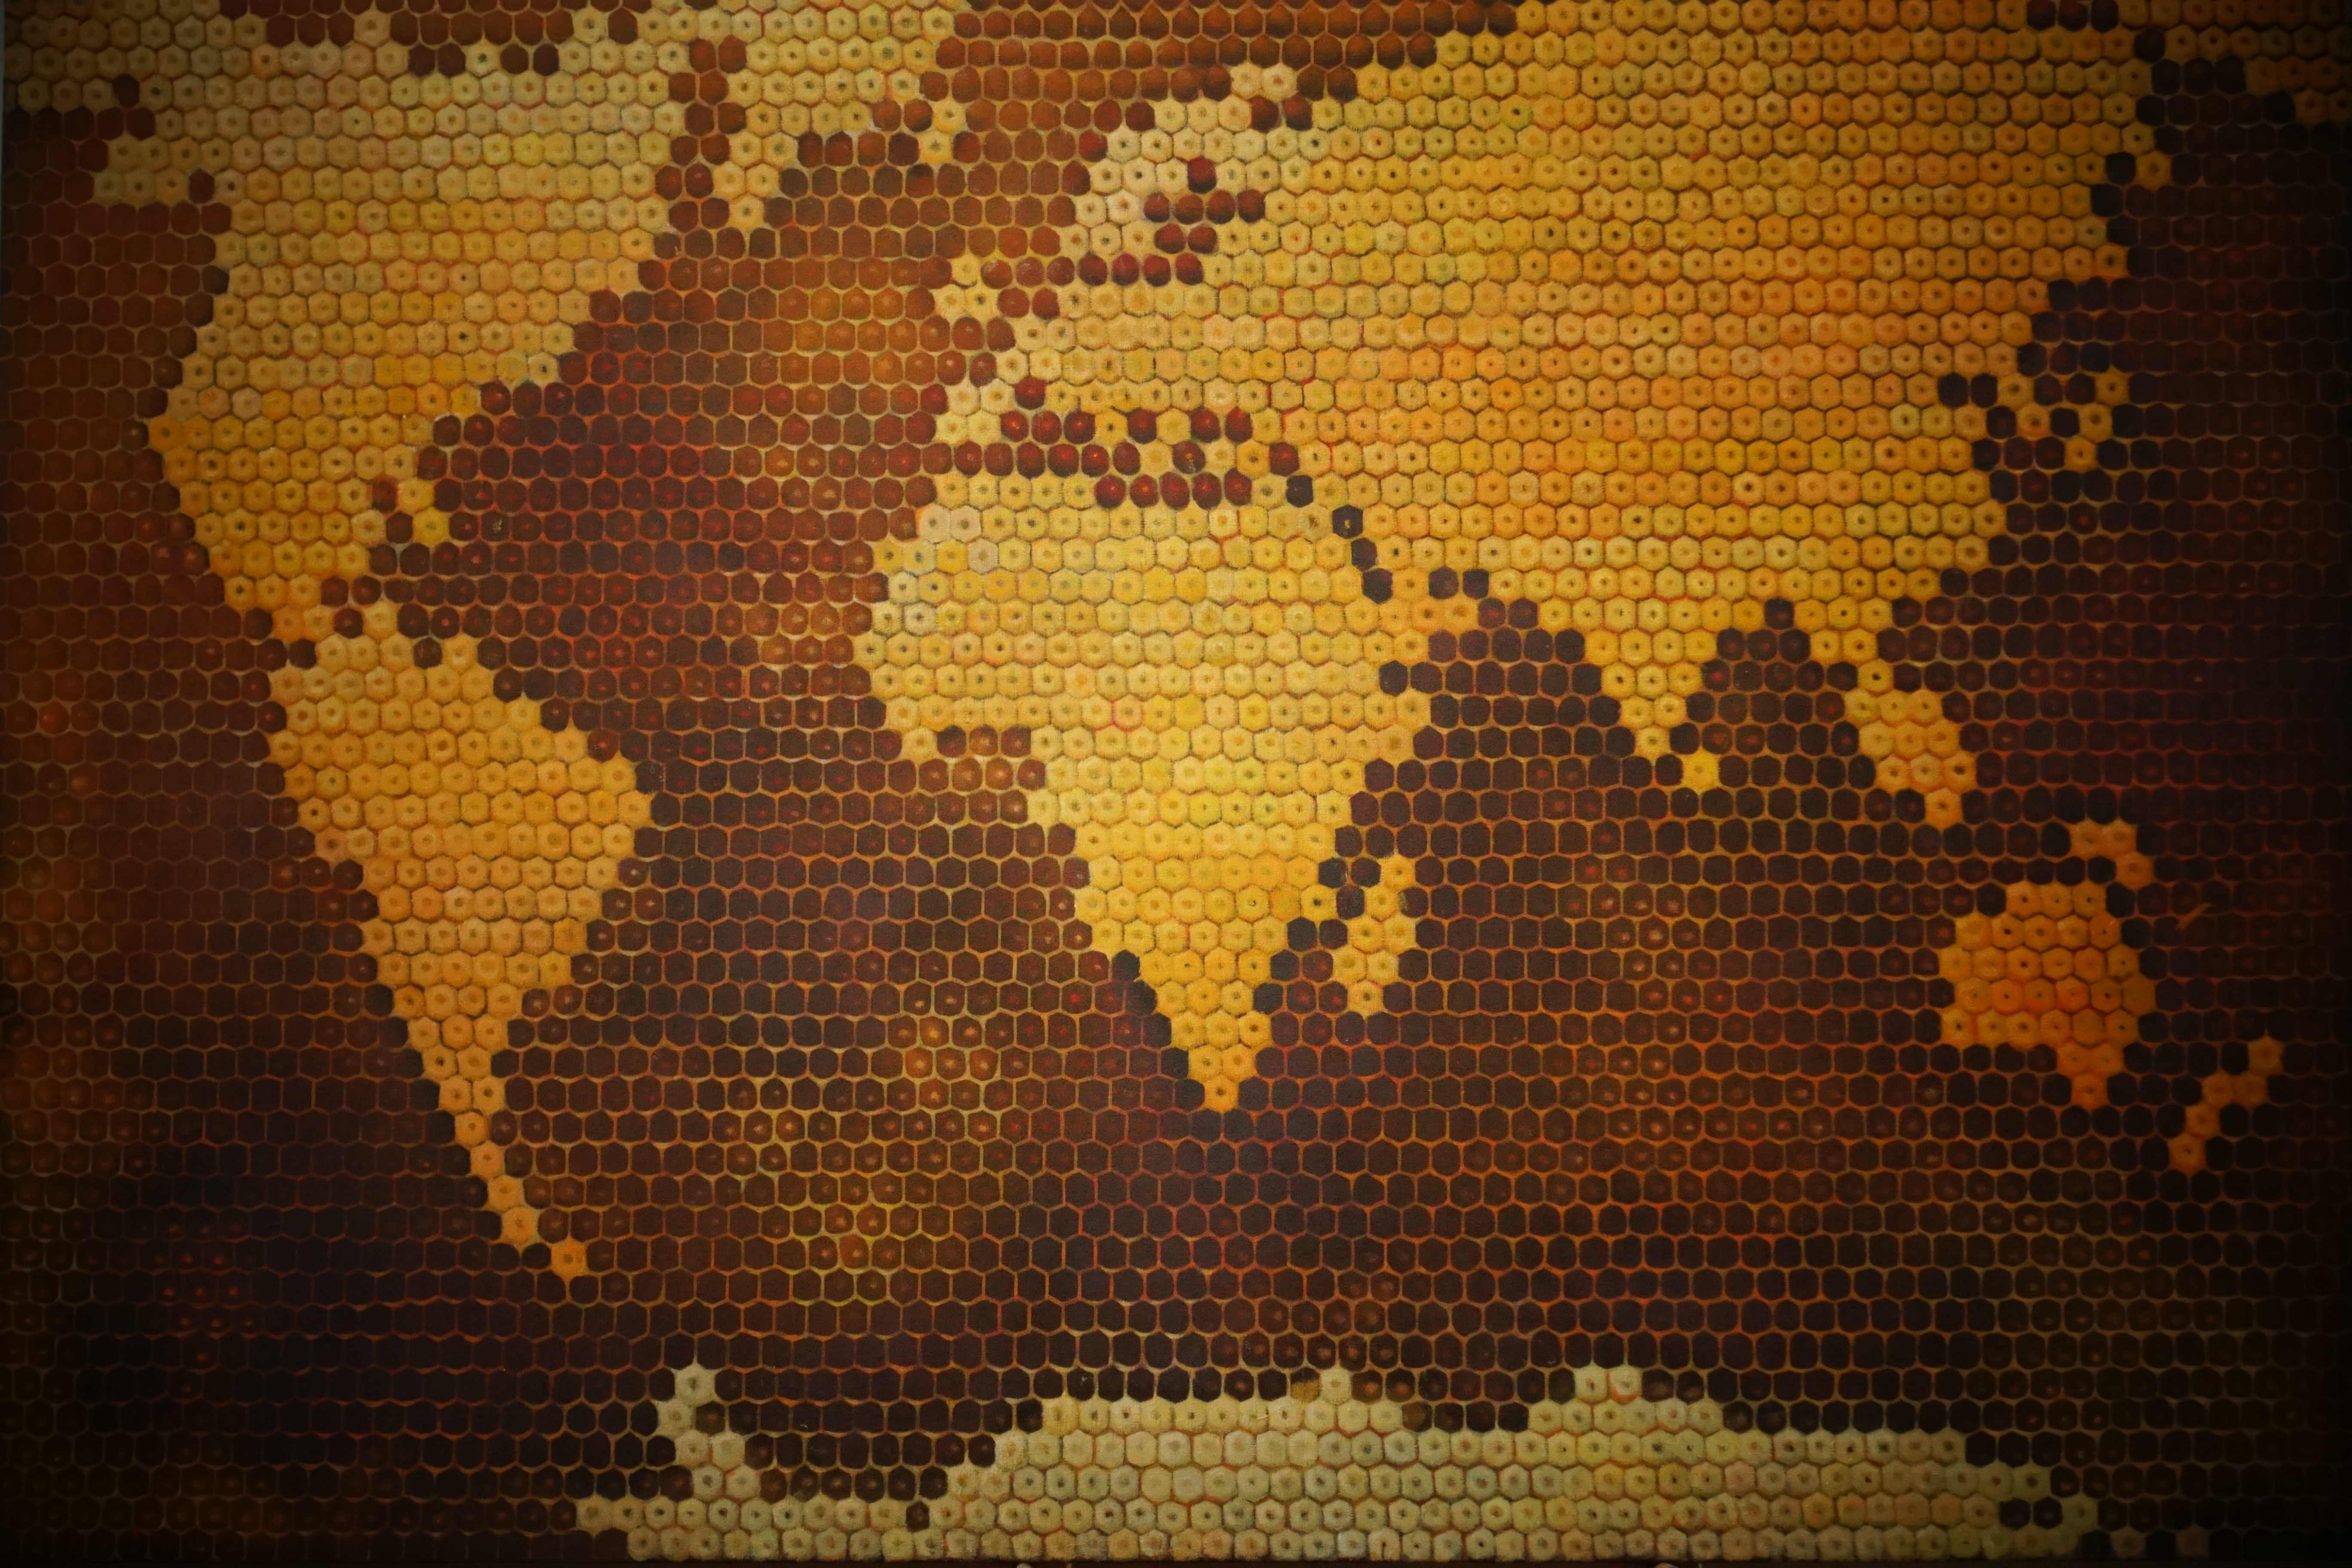 Viso pasaulio bitės darbininkės vienykitės 2017 100×150 al.,drb.